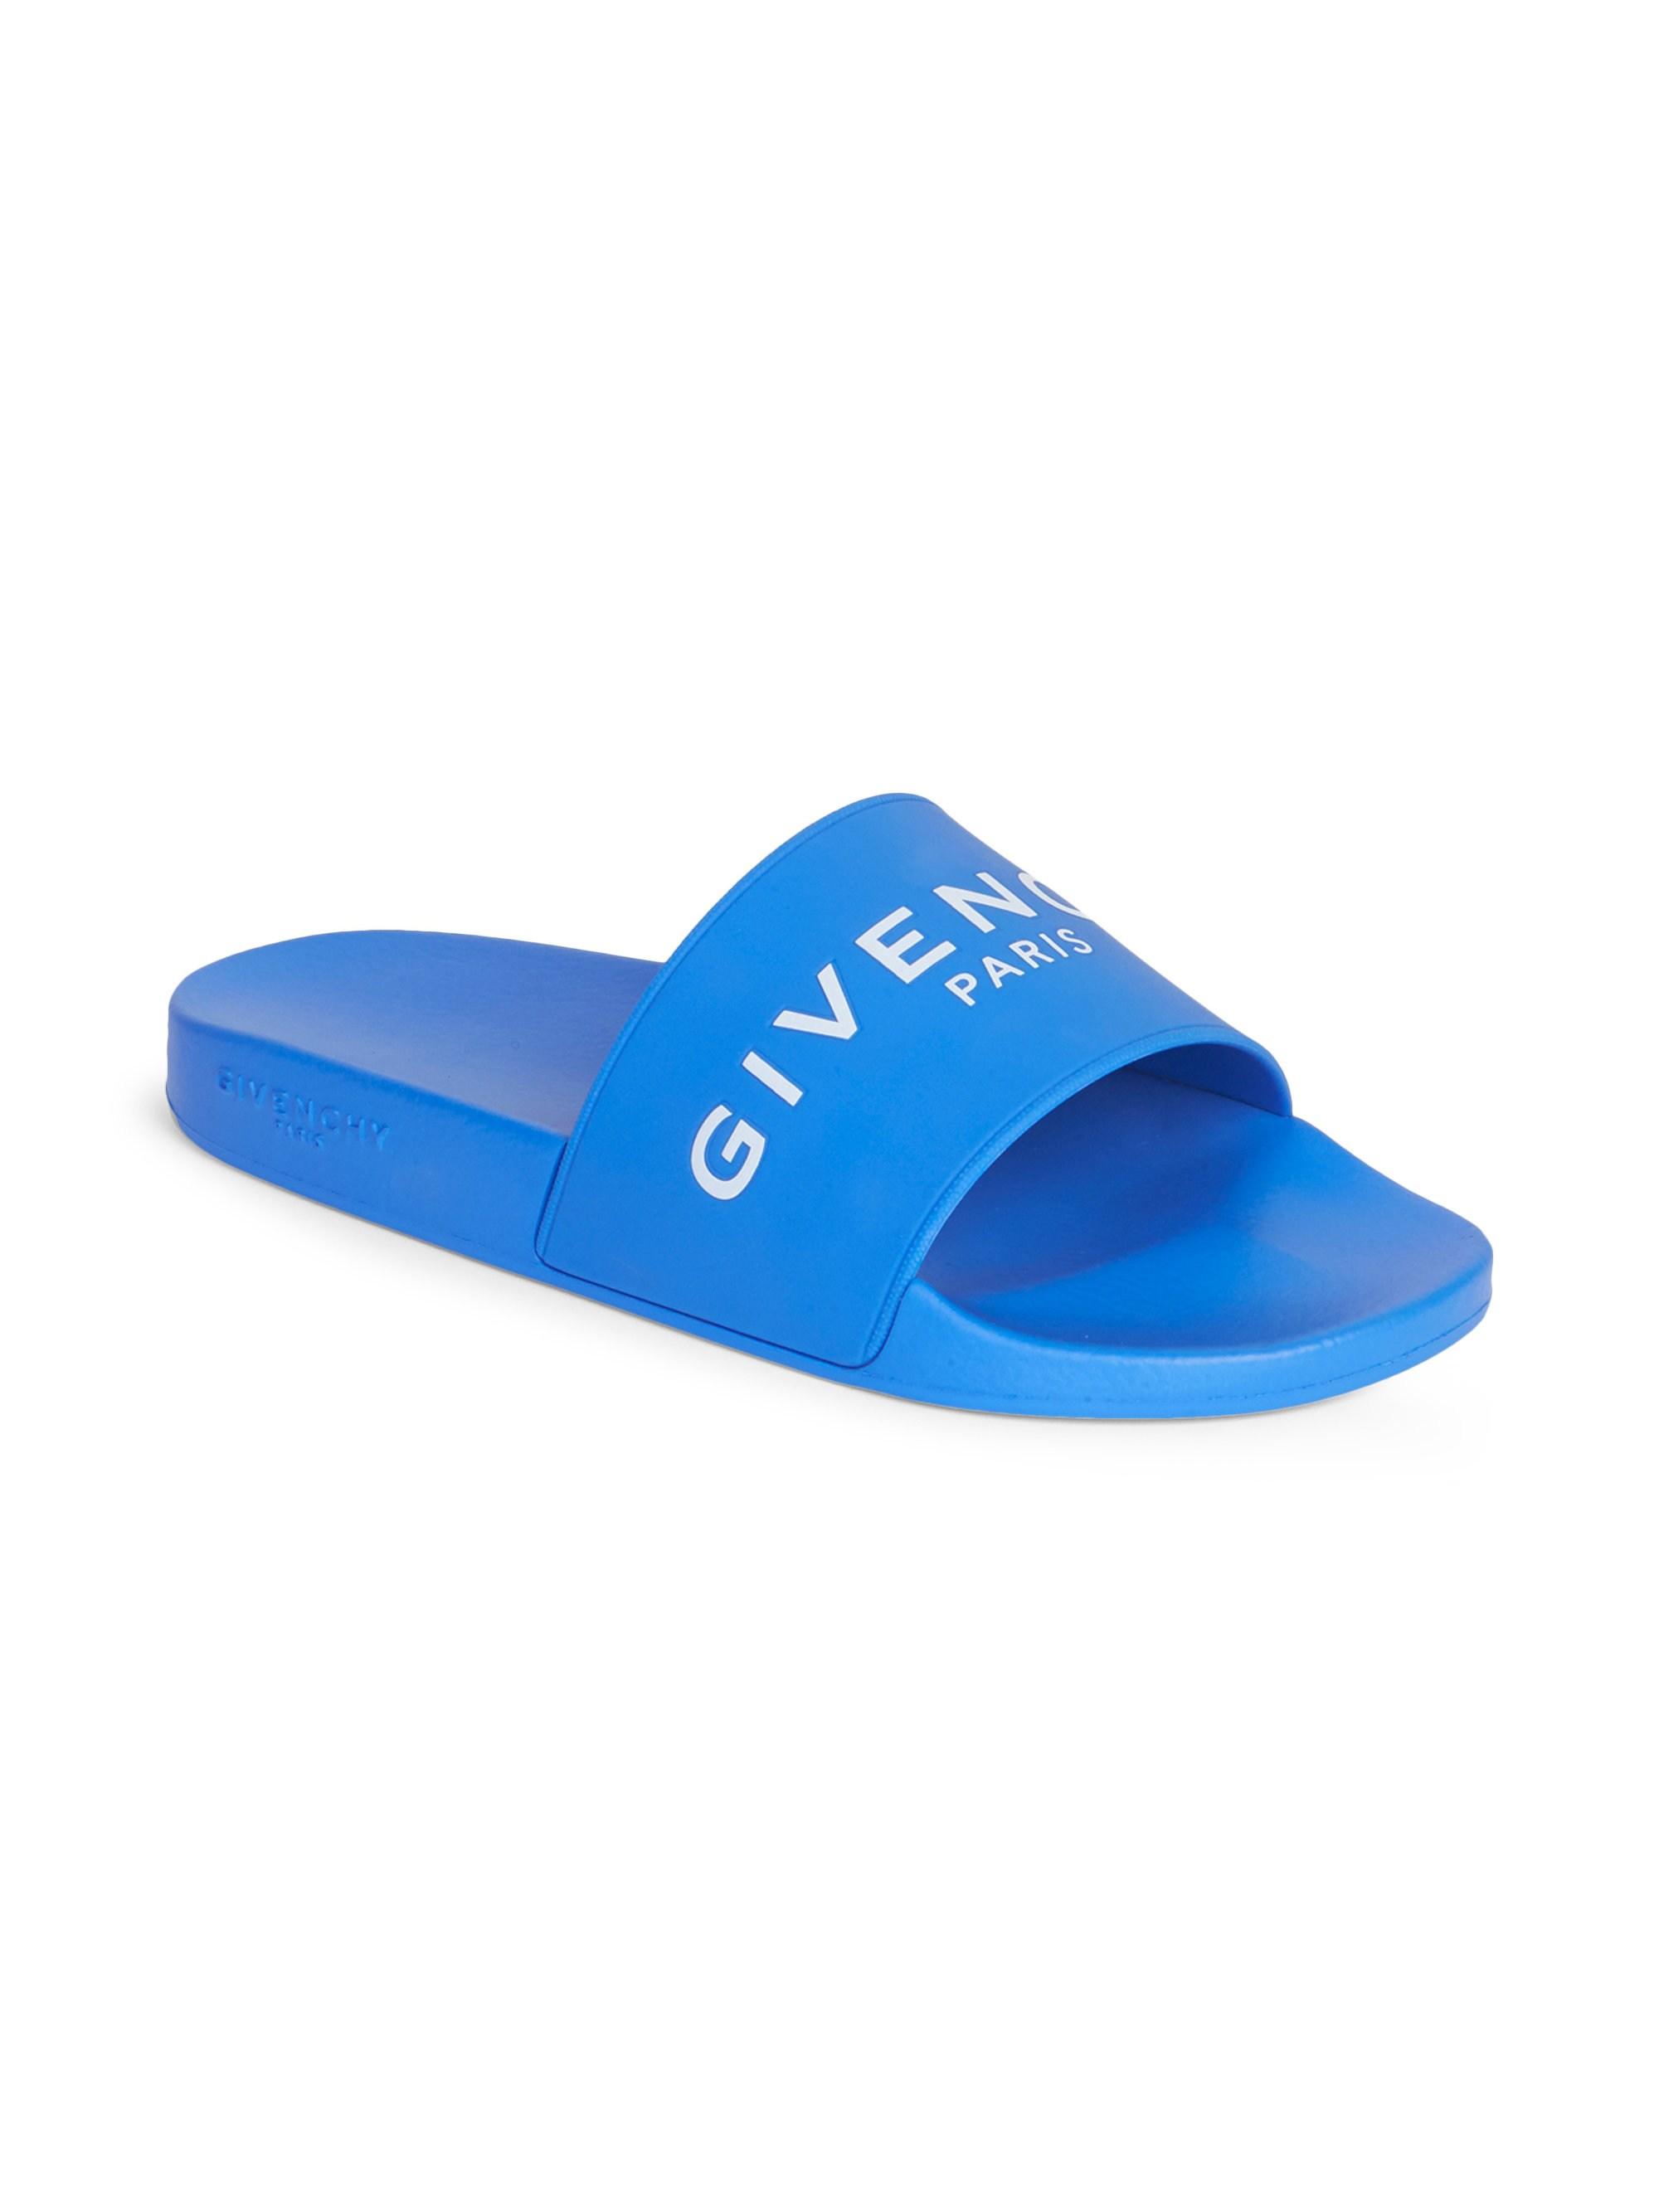 givenchy blue slides